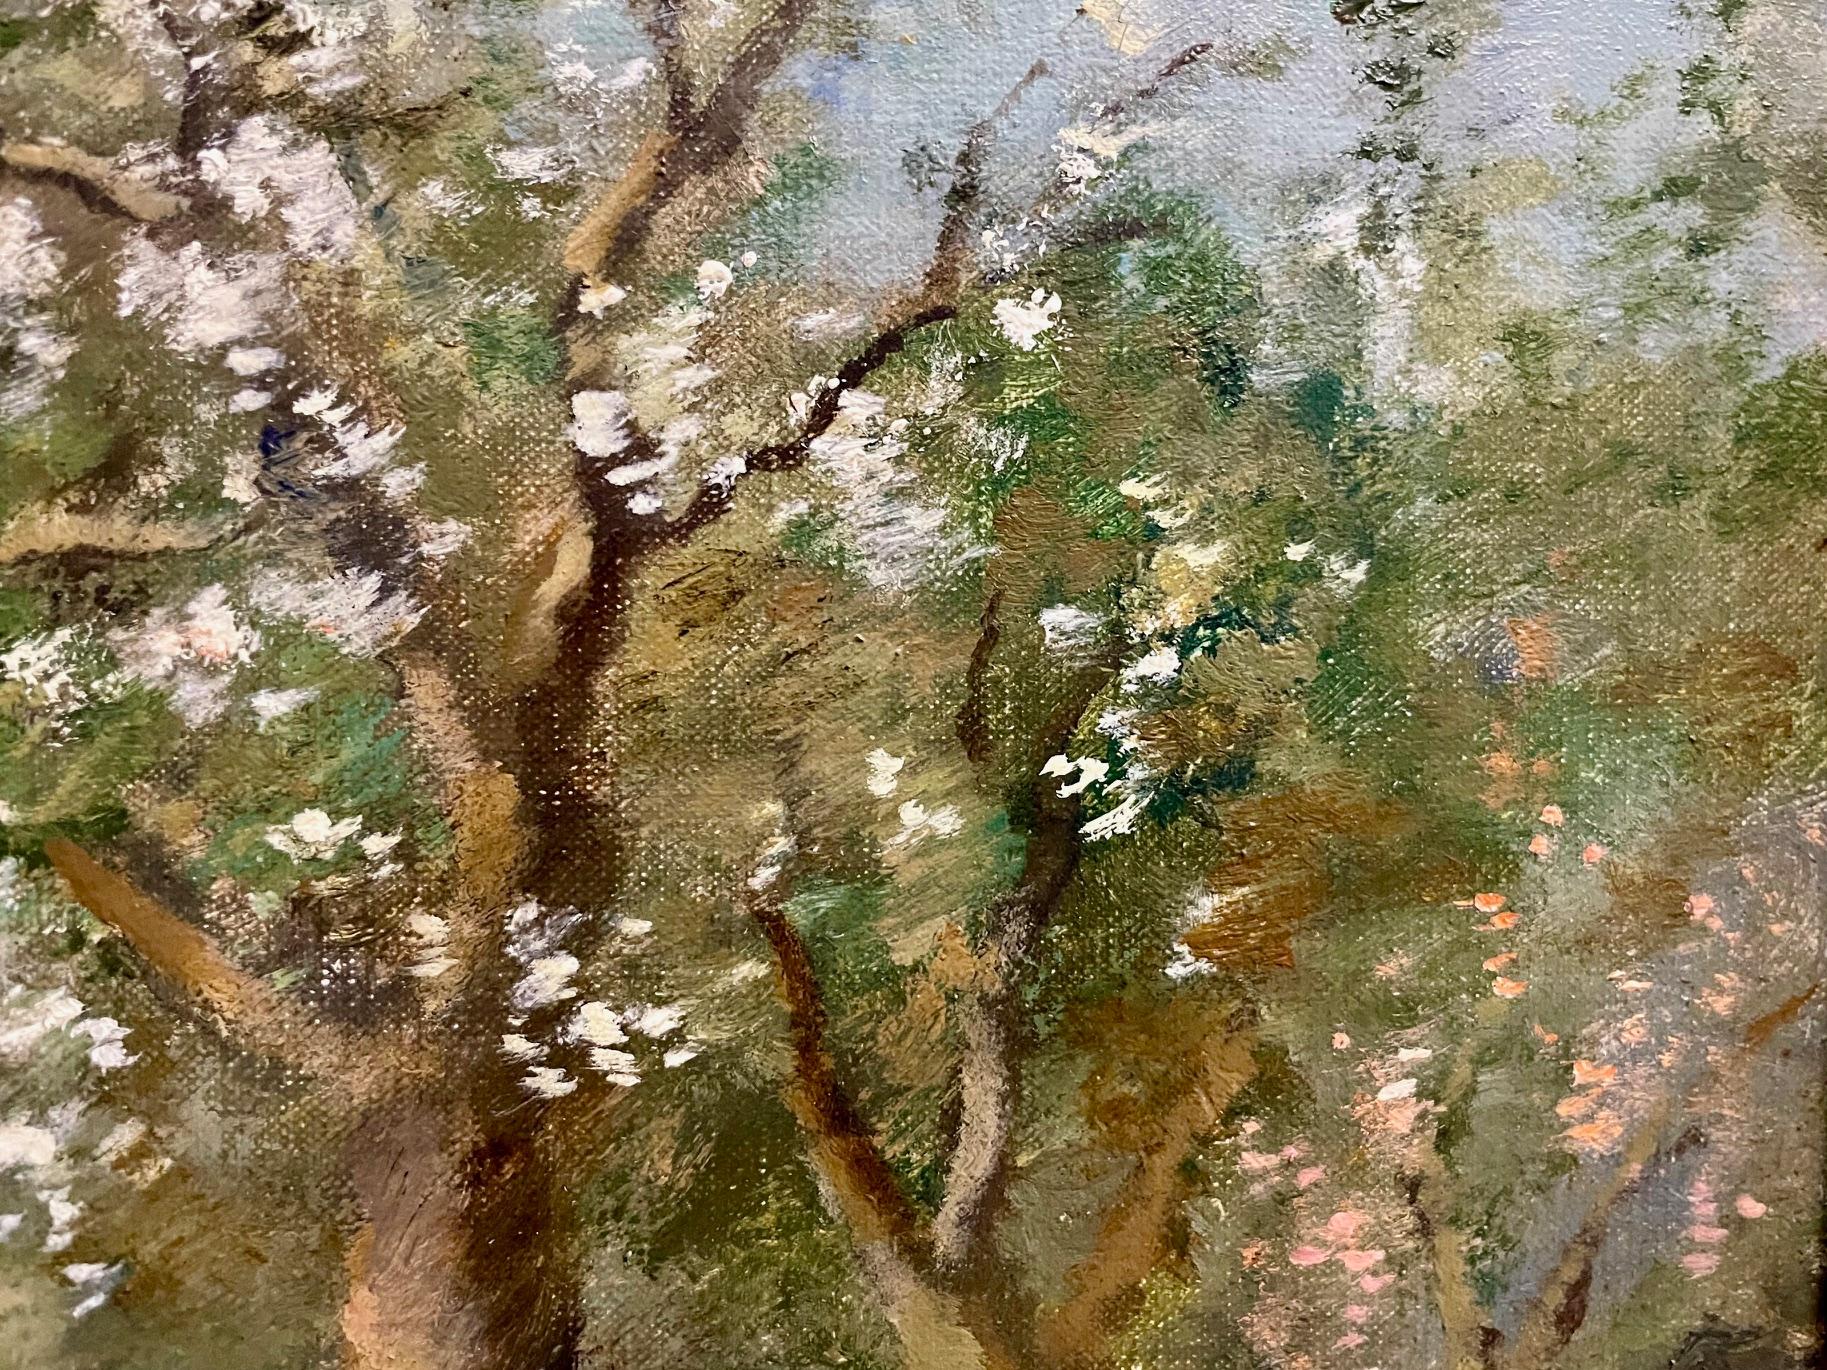 Springtime, 'In the Meadow' de Cornelis Bouter (1888-1966) est une peinture hollandaise avec des figures et un paysage dans un style impressionniste avec des fleurs du début du printemps. Scène idyllique au bord d'une rivière sous des arbres en